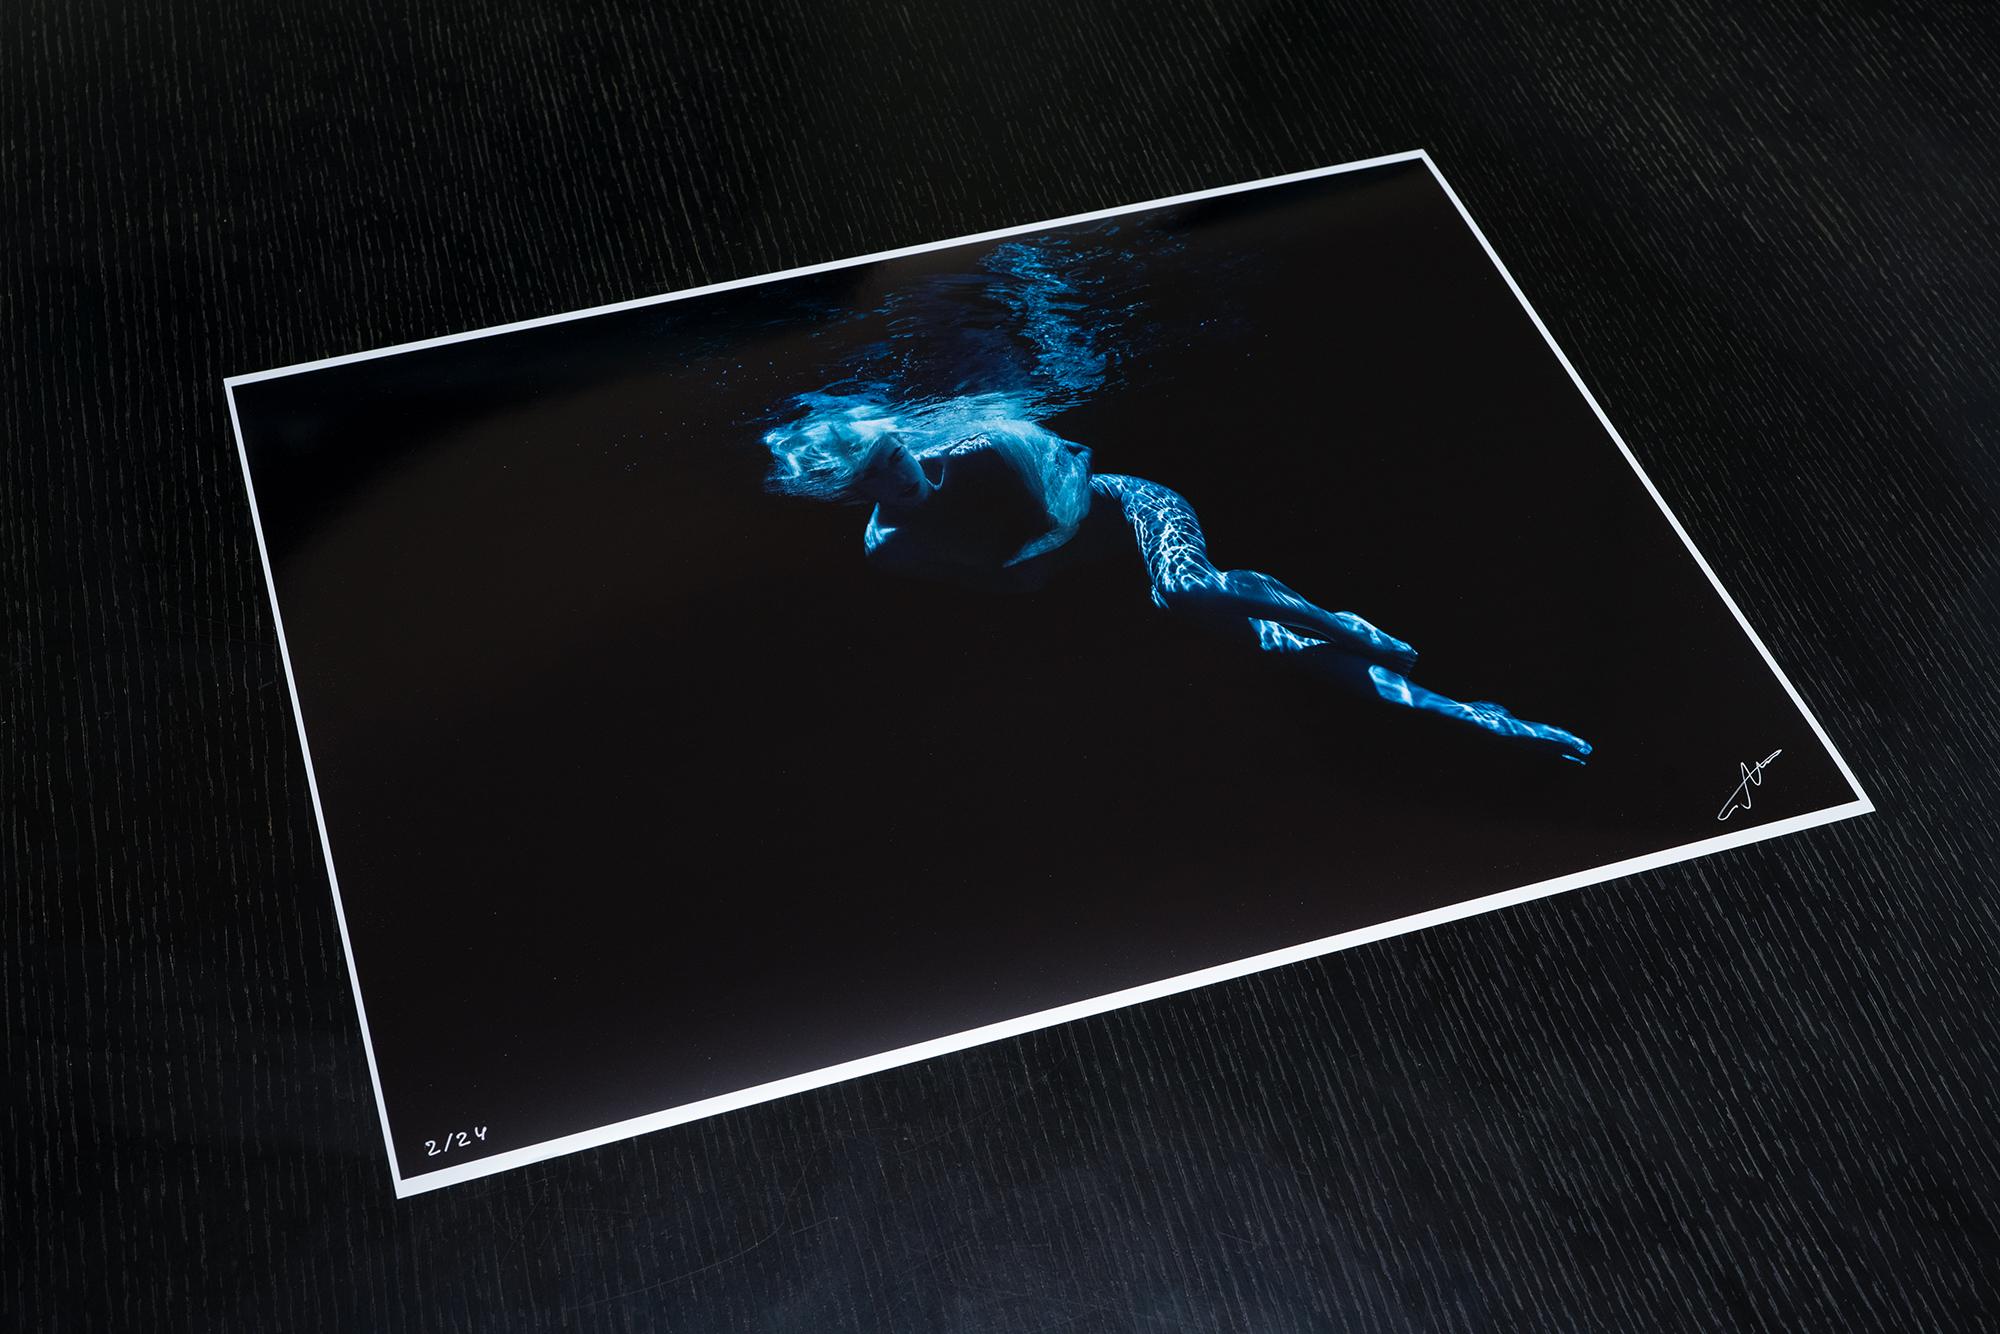 Eine Unterwasseraufnahme eines Aktmodells beim Tauchen in blauem Licht auf schwarzem Hintergrund. 

Vom Künstler signierter Originaldruck in Galeriequalität. 
Digitaler Pigmentdruck auf Archivierungspapier mit Metallic-Finish. 
Limitierte Auflage